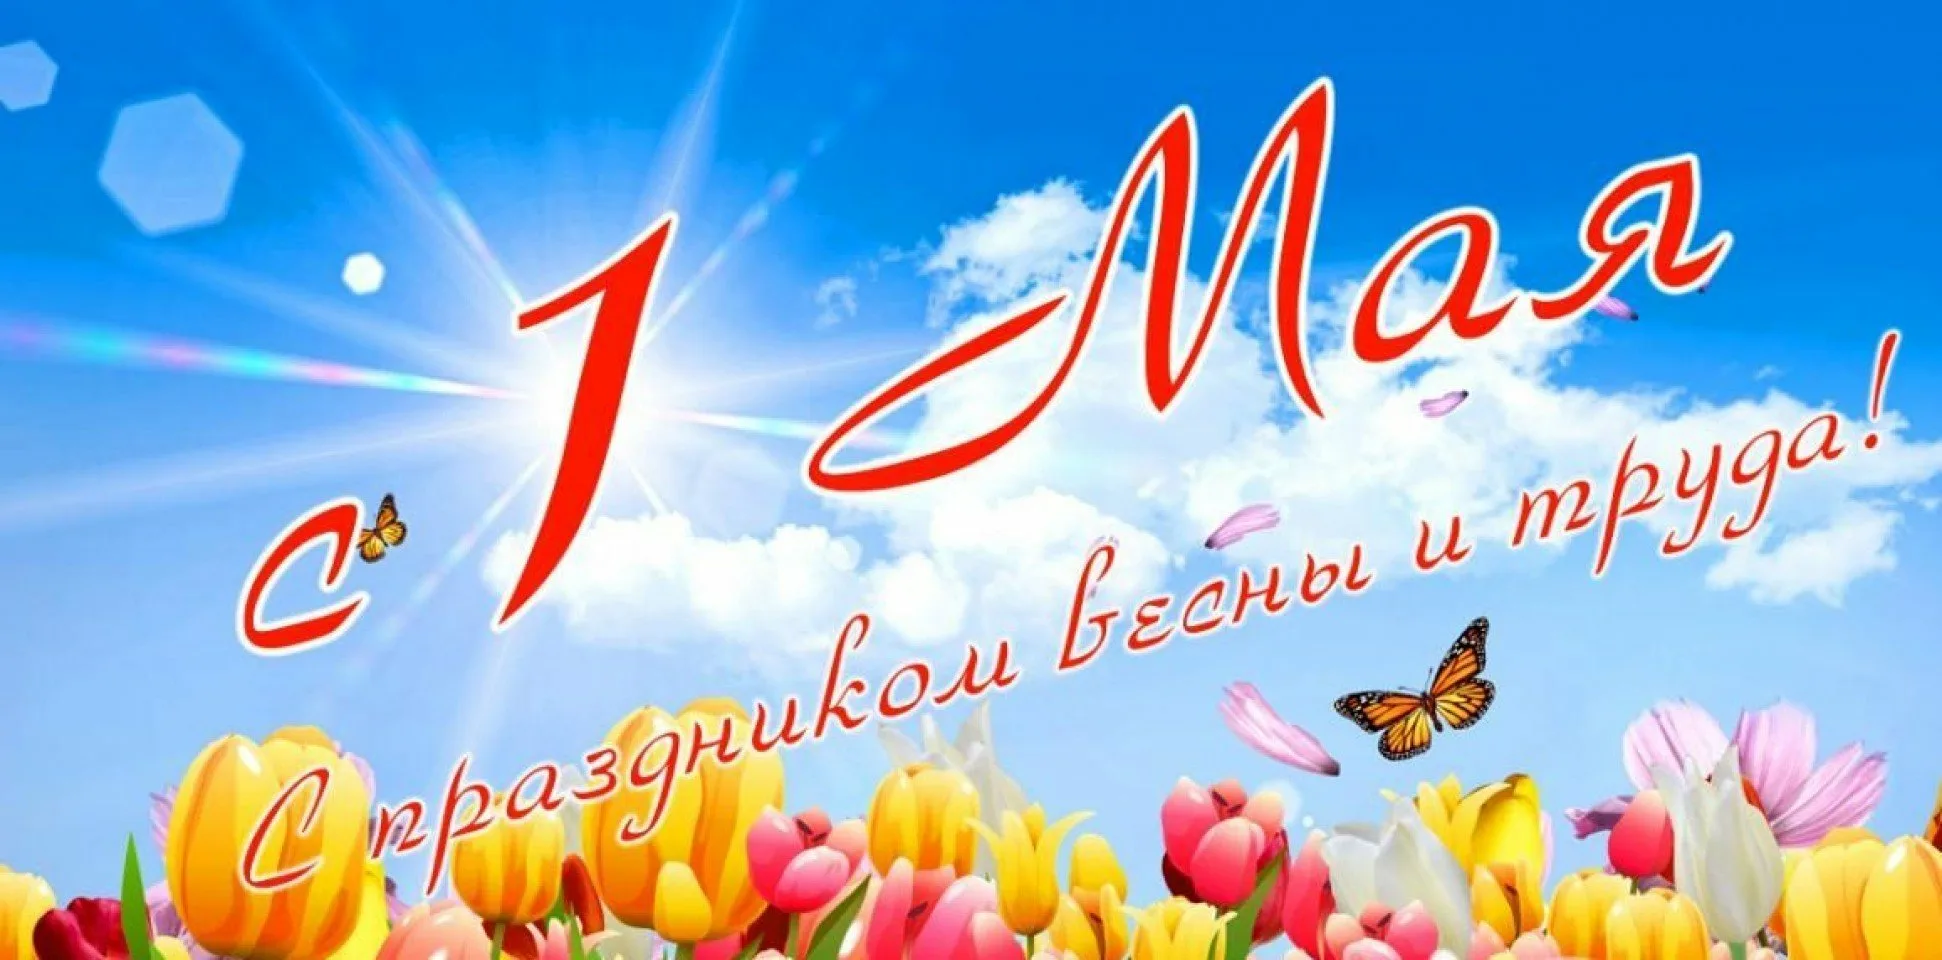 1 мая 150. 1 Мая. 1 Мая праздник весны и труда. Поздравление с 1 мая. 1 Мая праздник.